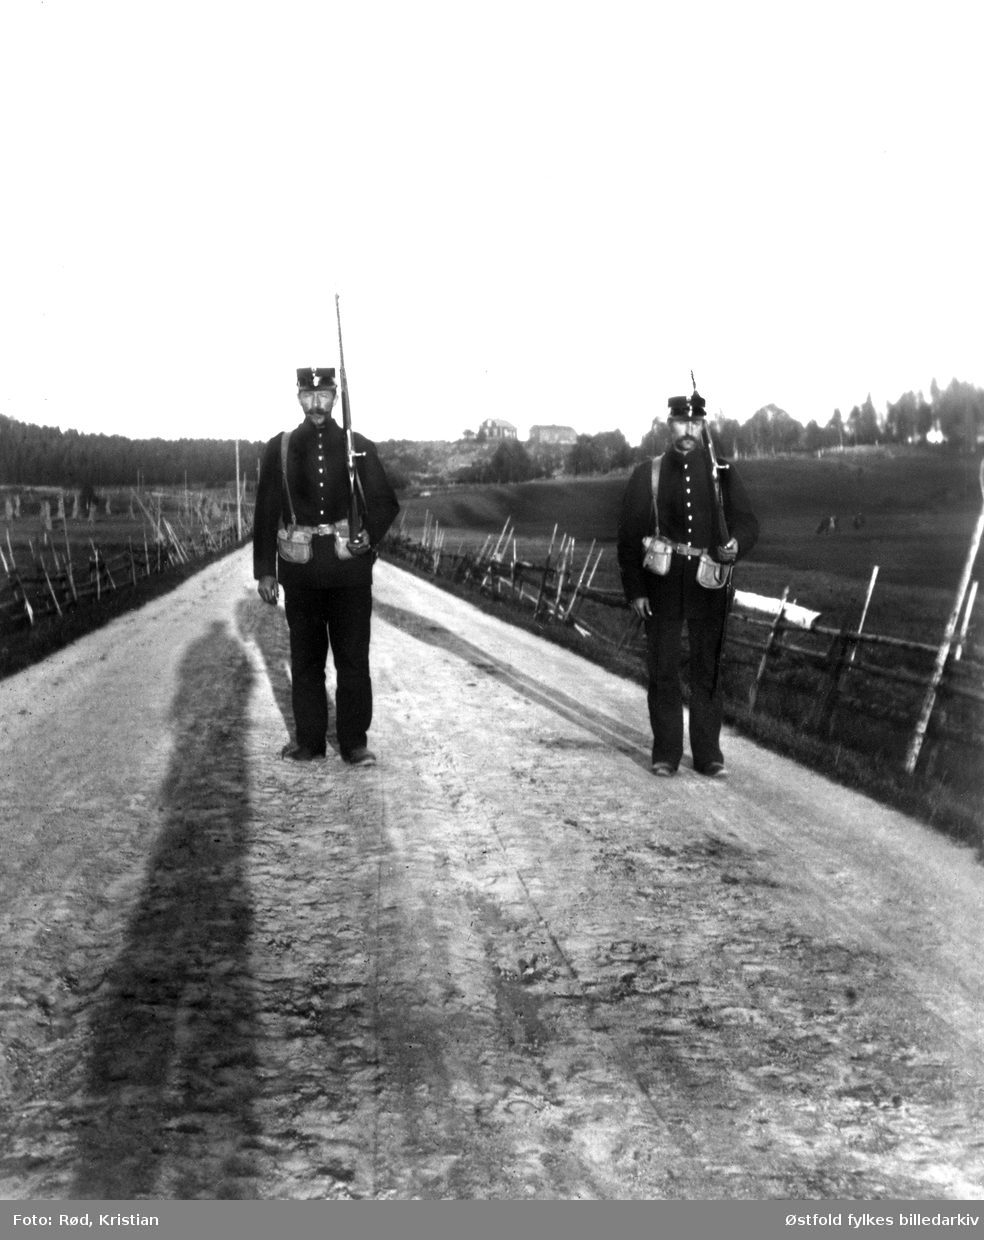 Grensevaktsoldater på post, ukjent sted i Aremark 1905.